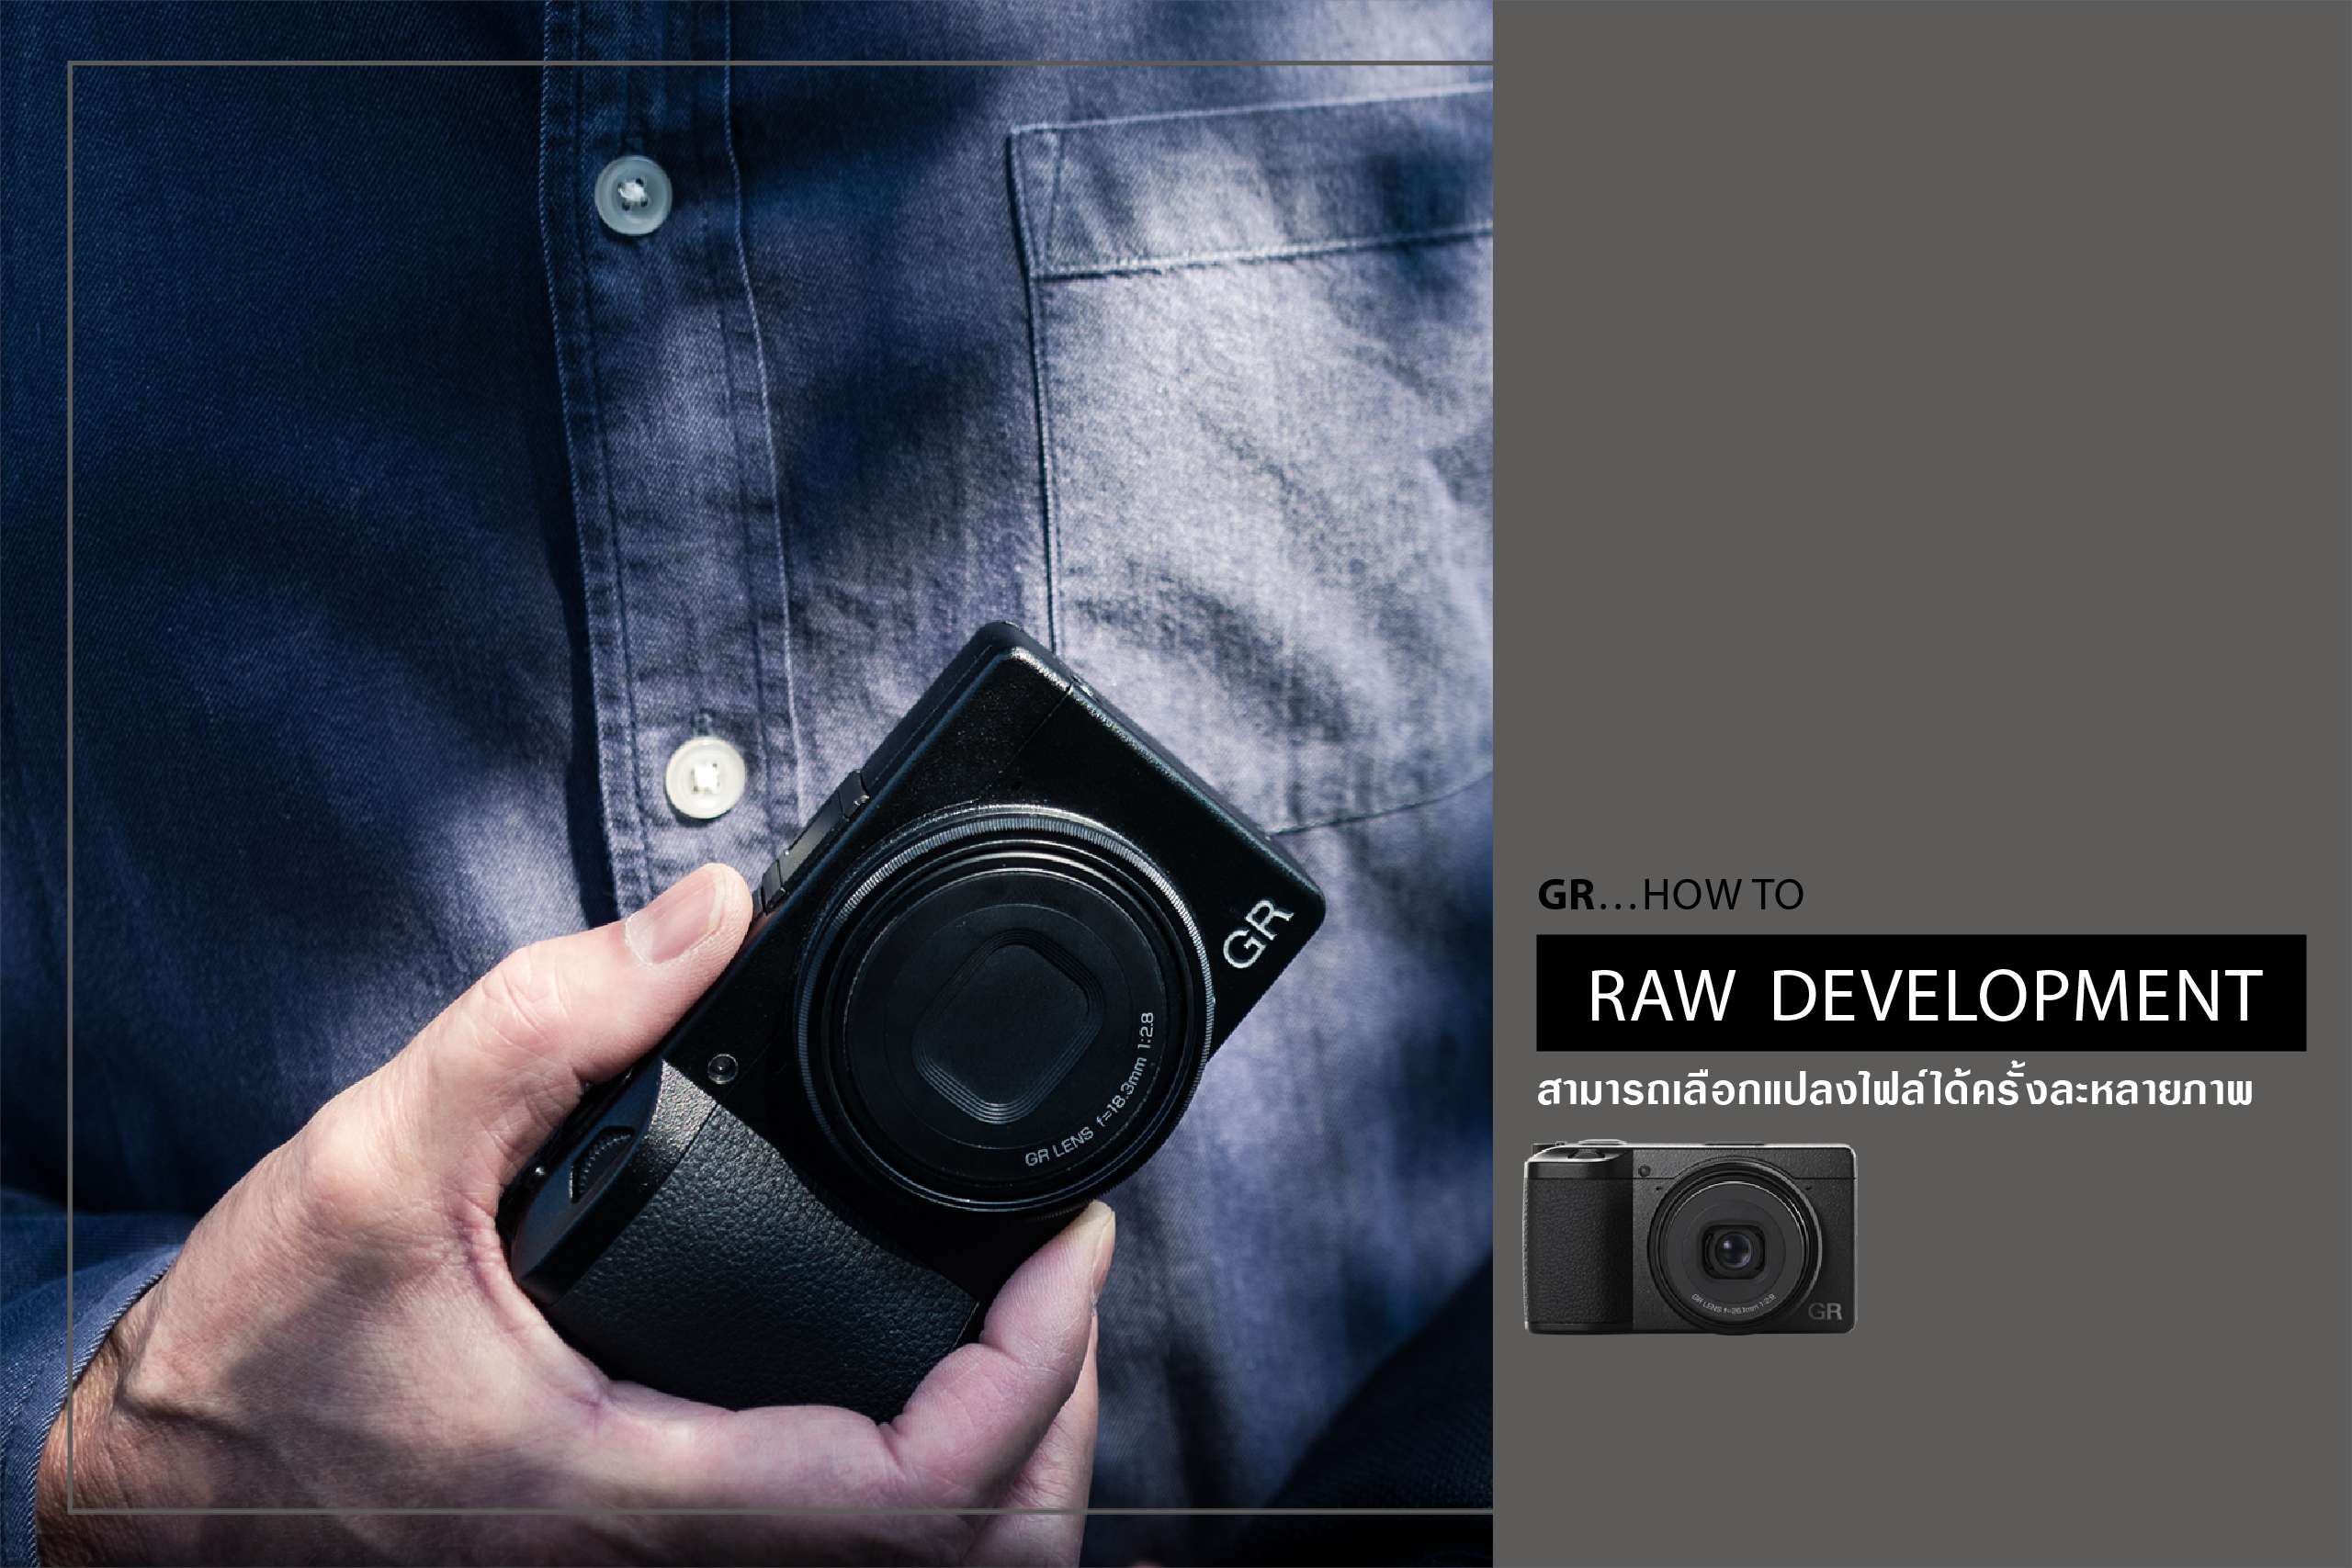 GR HOW TO : RAW DEVELOPMENT สามารถเลือกแปลงไฟล์ได้ครั้งละหลายภาพ